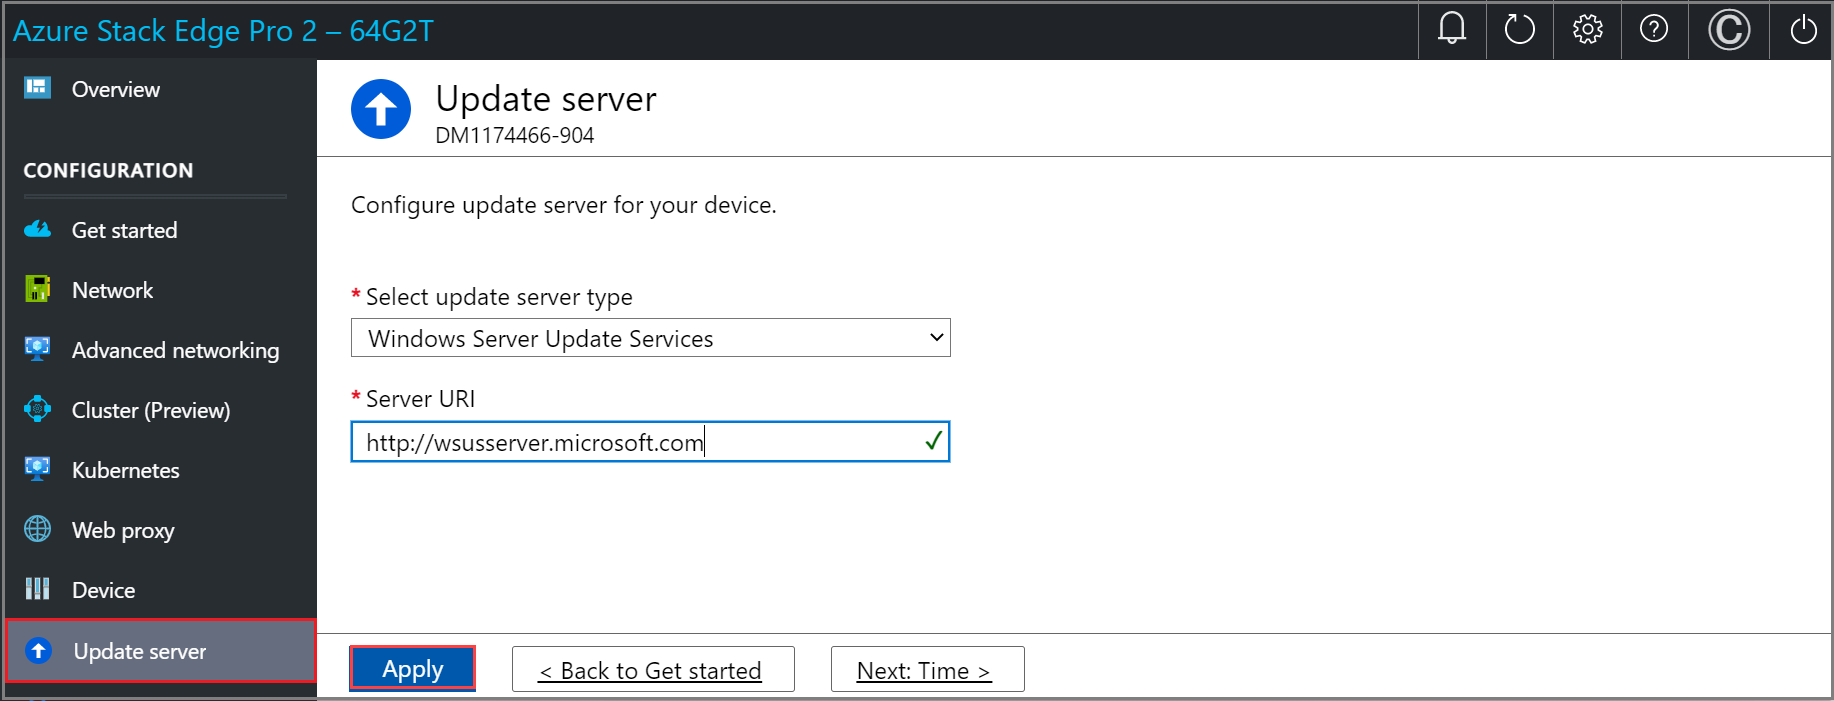 لقطة شاشة لصفحة خادم التحديث مع تكوين خادم Windows Server Update Services في واجهة مستخدم الويب المحلية لجهاز Azure Stack Edge. يتم تمييز الزر تطبيق.